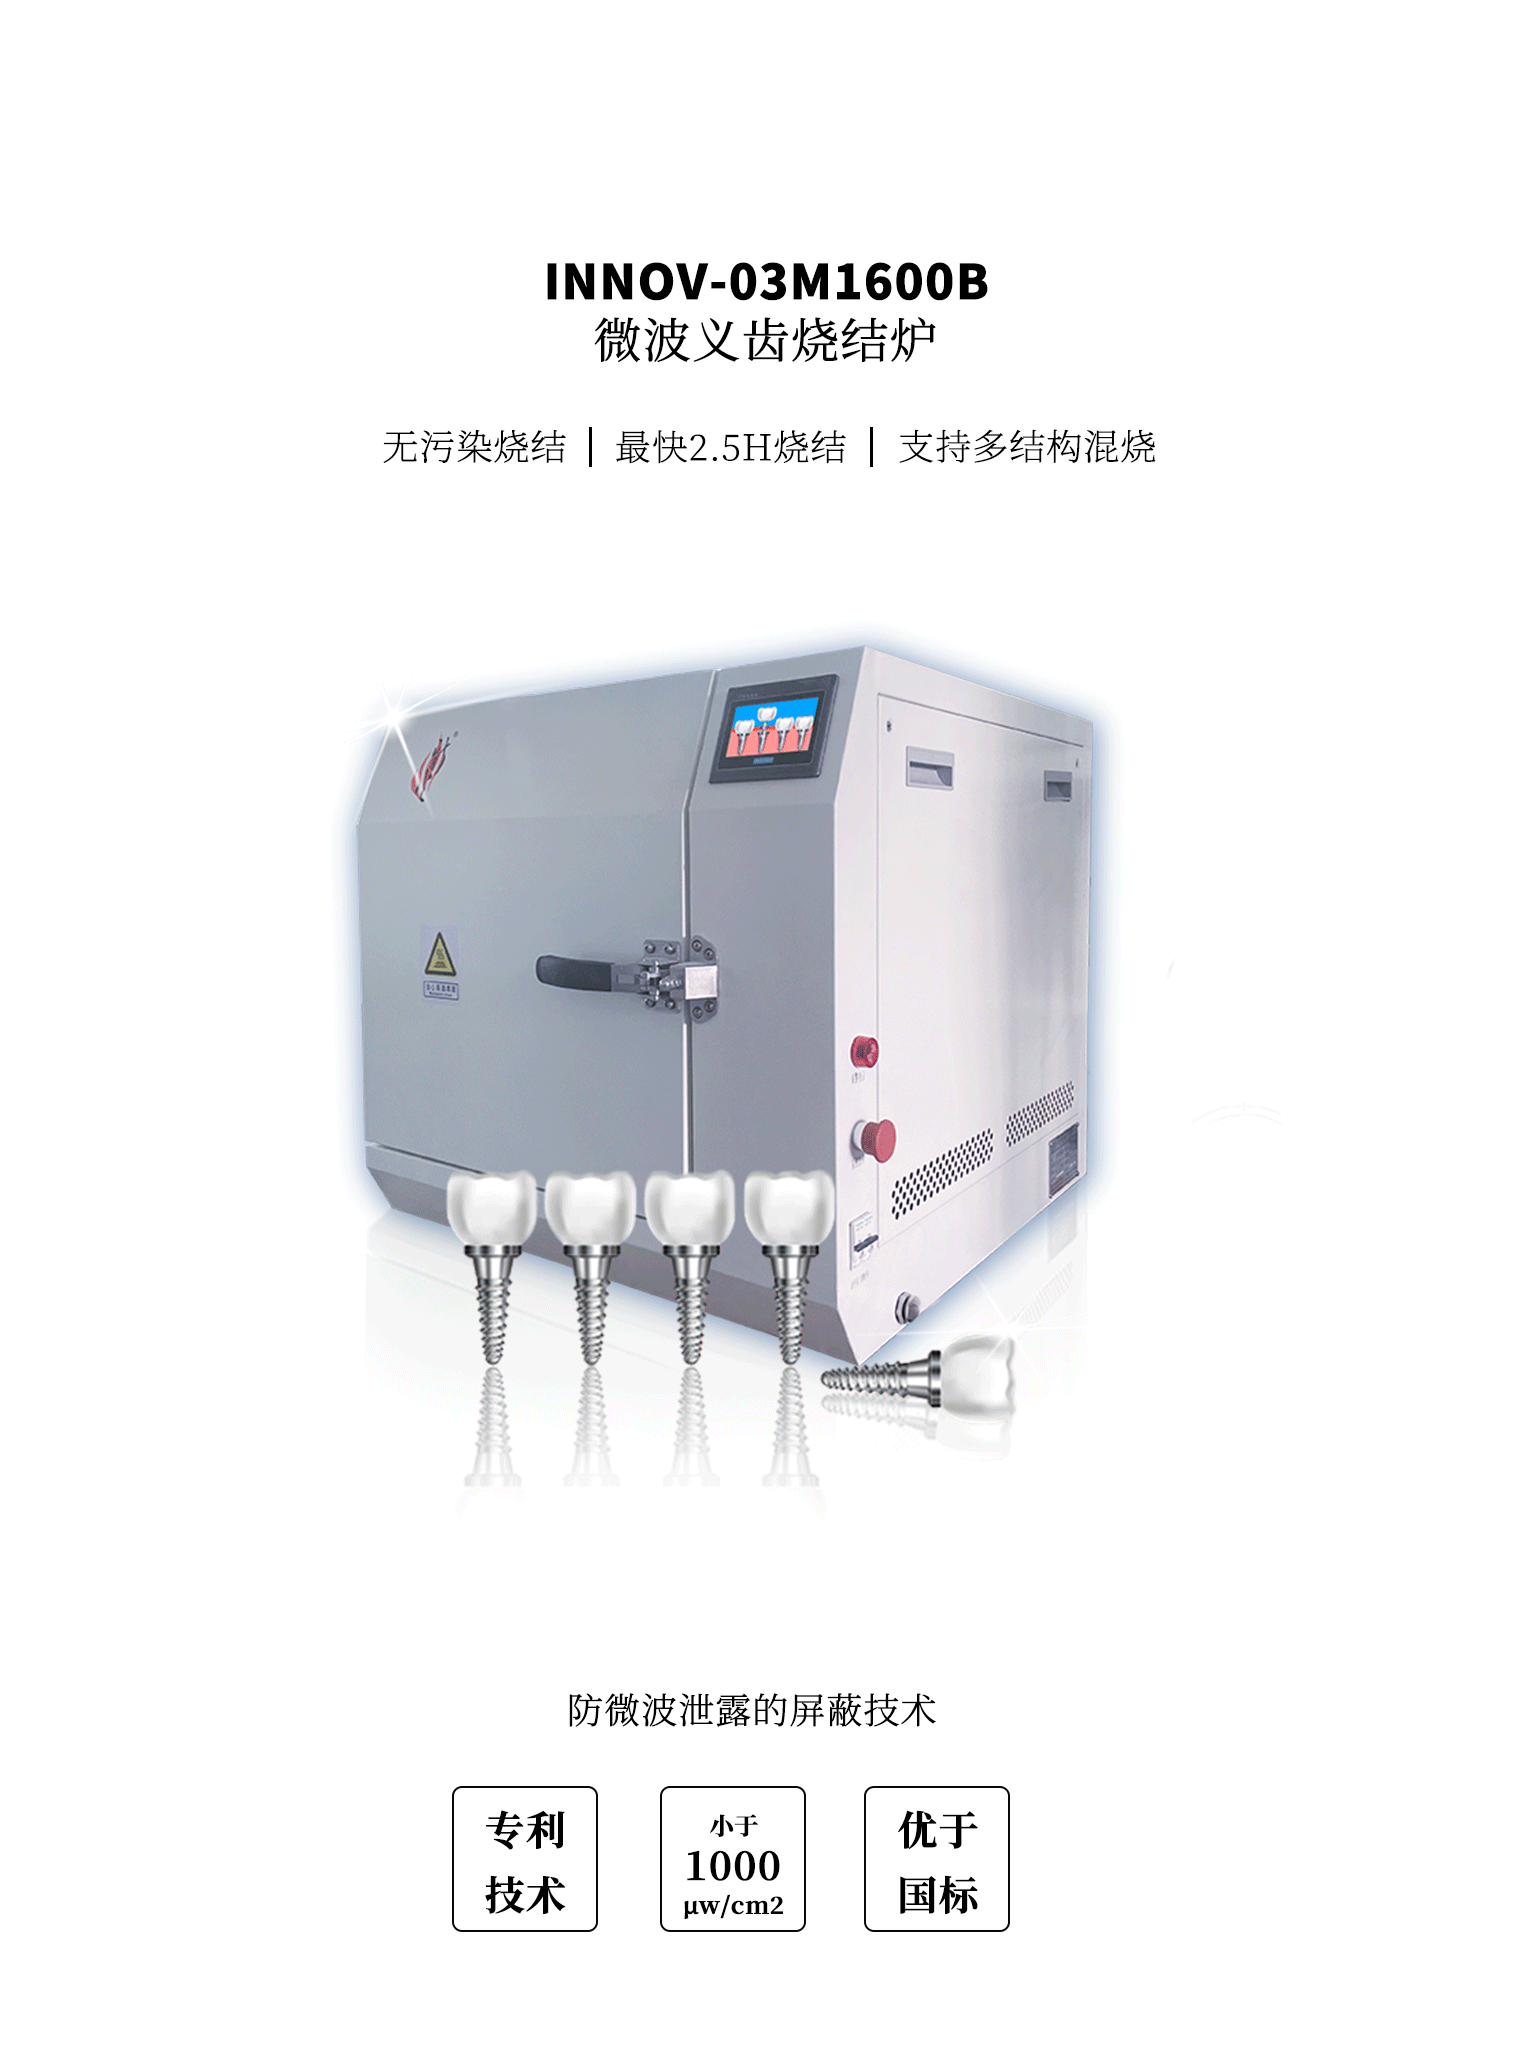 INNOV-03M1600B微波义齿炉是我公司推出之精致型集炉体、电气控制于一柜的微波高温加热设备。 利用微波同步高温加热技术，通过理论模型的建立和计算，设计的炉膛尺寸约130×130×120（宽×深×高）， 保证炉膛空间微波功率密度集中；保证加热负载、升温速度及微波功率之间的合理匹配。 以上述基础计算，通过合理的谐振腔设计、保温结构及辅热设计和自动控制设计， 设计出氧化锆义齿快速微波烧结炉（以下简称快速微波烧结炉）； 氧化锆义齿快速微波烧结炉的机械精密程度和设计合理性是实现快速烧结的的关键， 电器元件可靠性则是烧结炉能否长时间持续稳定工作的前提； 烧结曲线控制由集成于快速烧结炉单片机中的工艺参数决定，且可根据不同的需求进行调整。 适用于氧化锆等陶瓷义齿材料的烧结,也可用于空气气氛条件下材料微波合成、烧结、膨化、焙烧、锻烧等工艺及实验研究。